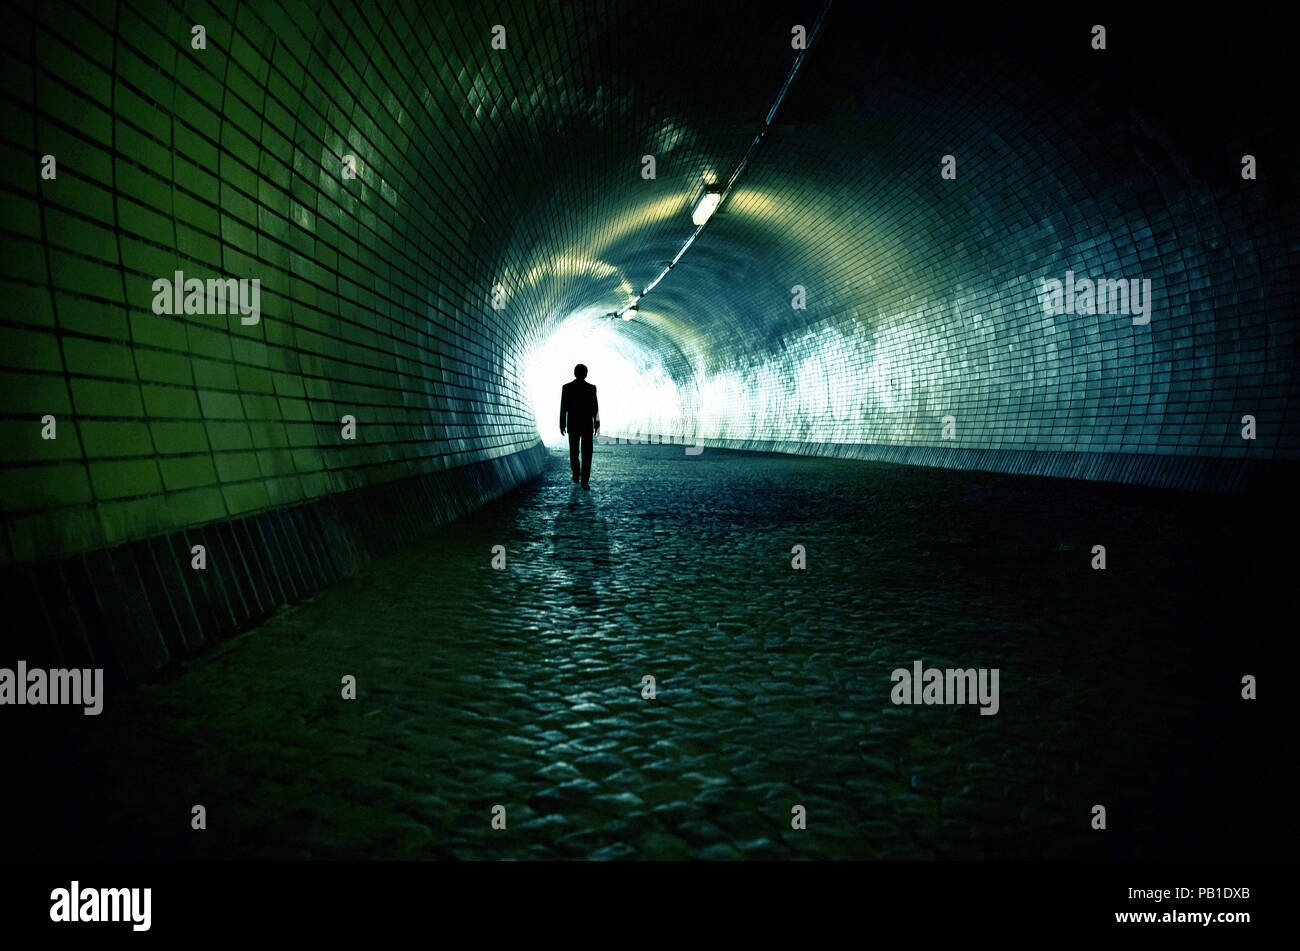 Uomo a camminare sotto un tunnel verso l'uscita - immagine per la copertina del libro Foto Stock